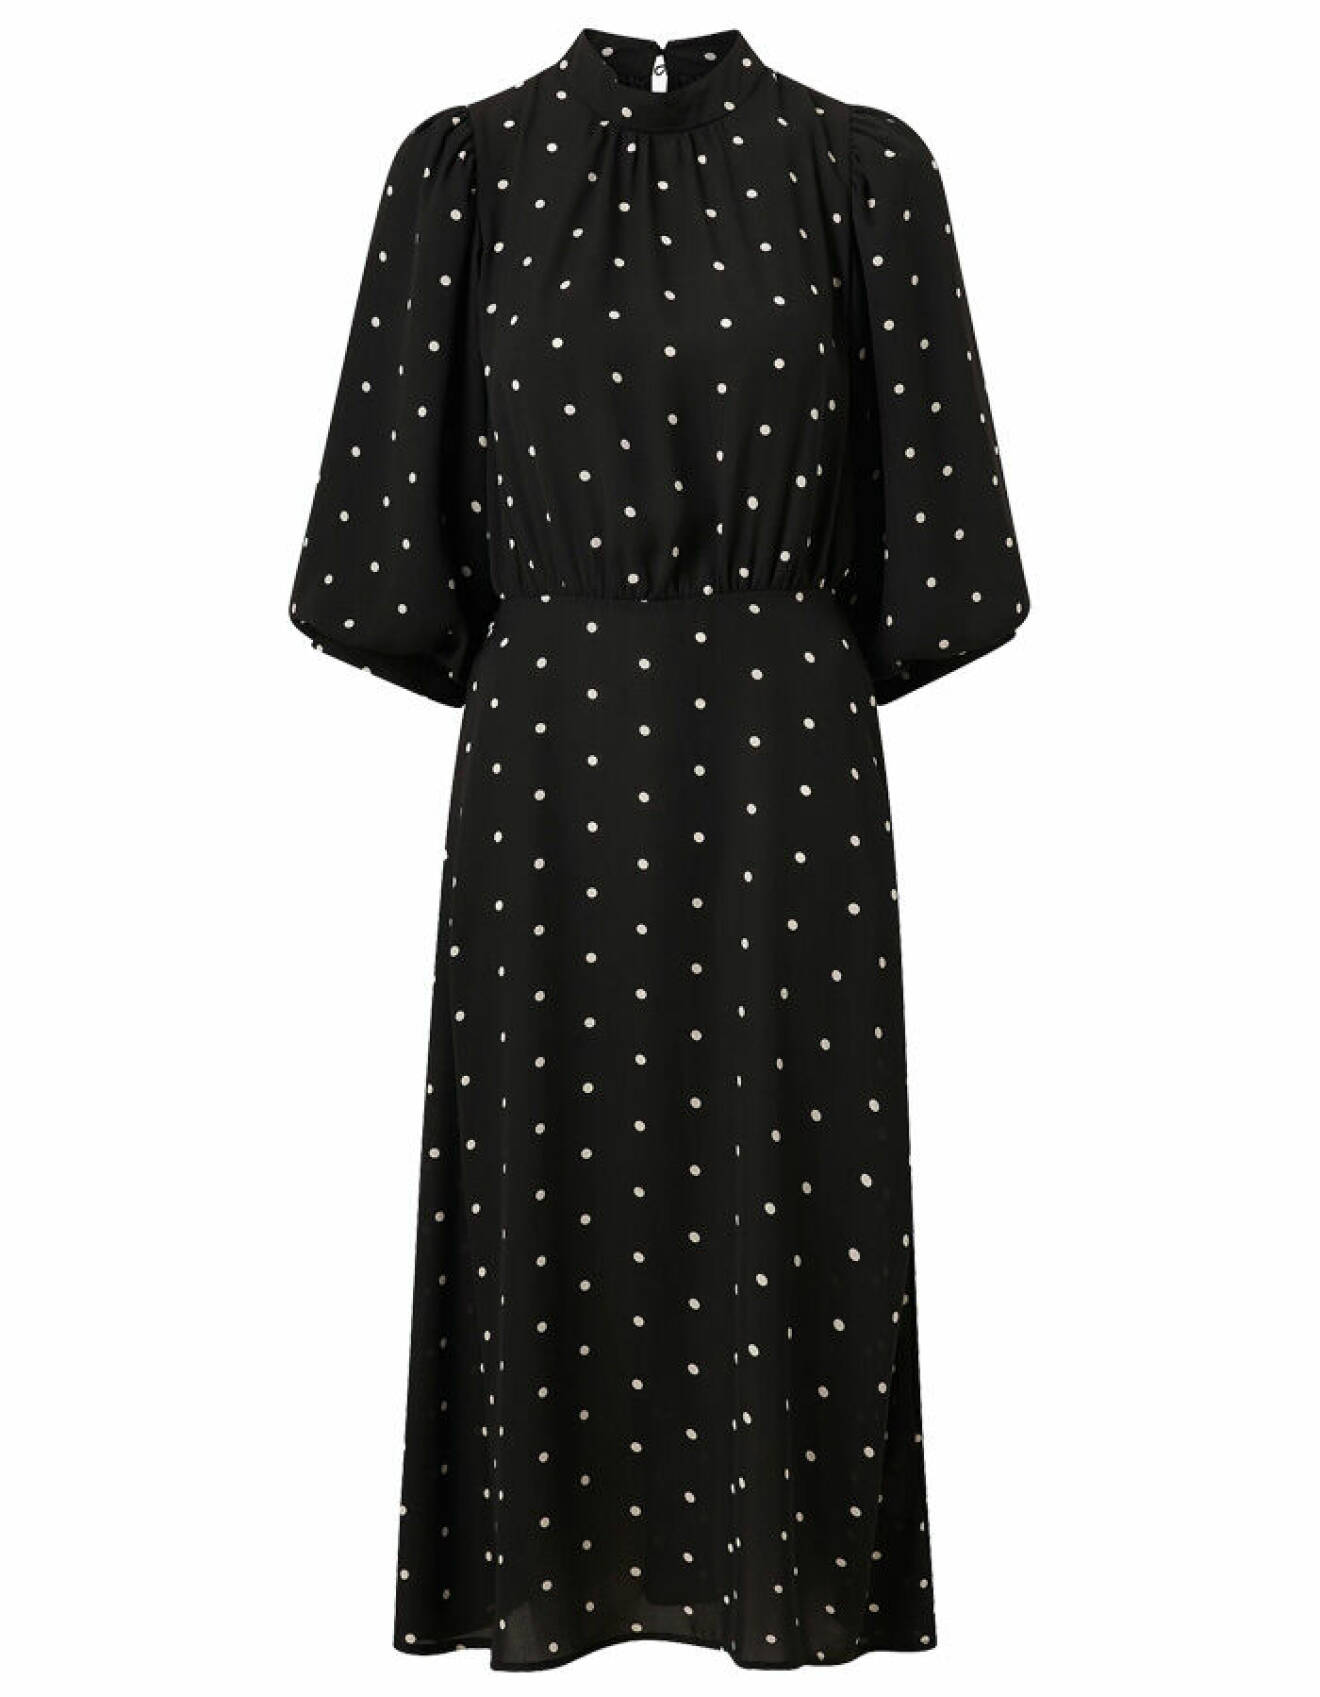 svart klänning med vita prickar om markerad midja från ellos collection